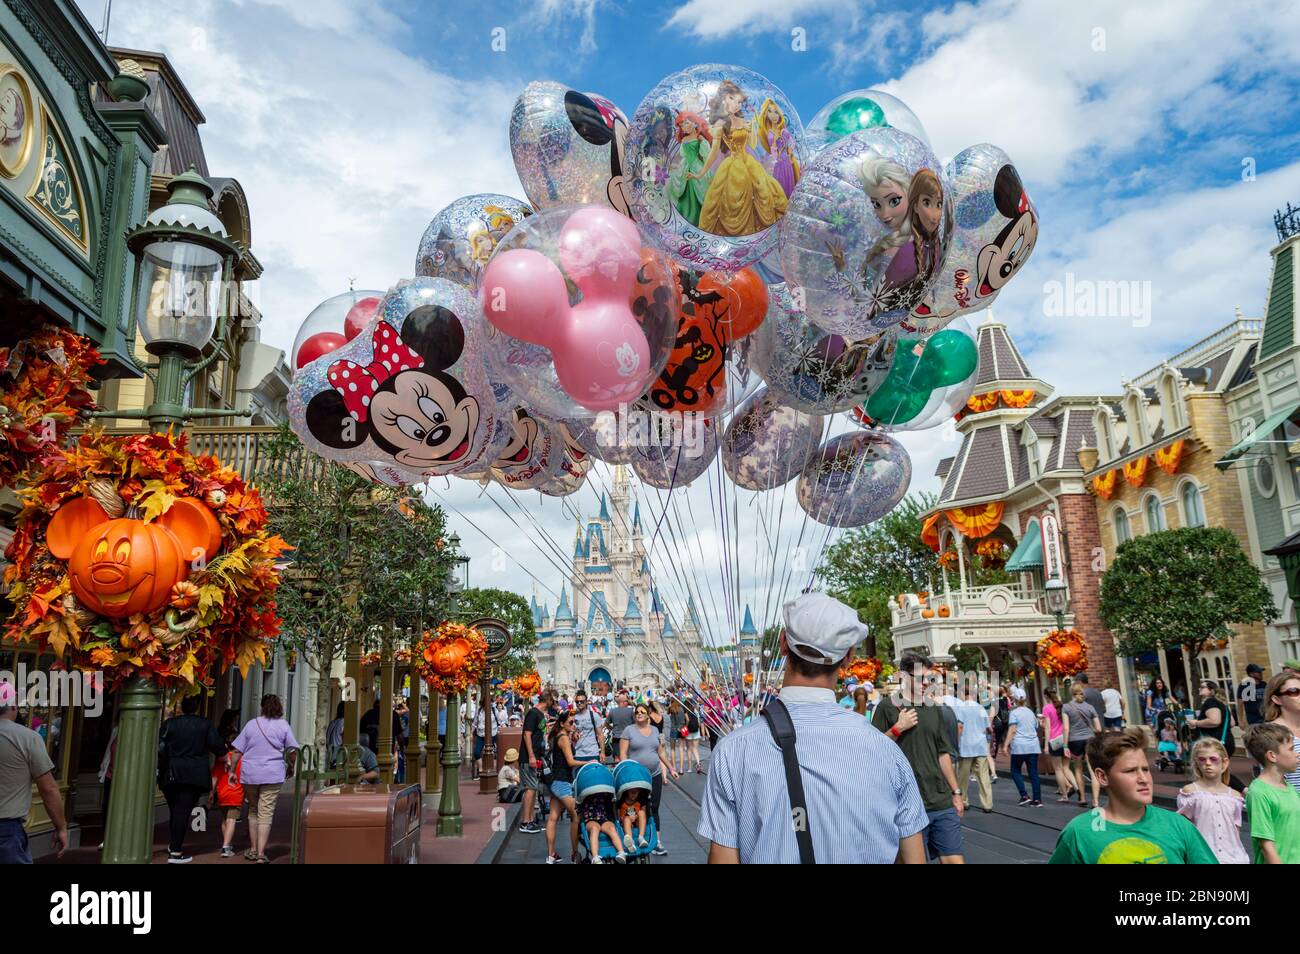 Ballon Seller at magic kingdom theme park, Orlando, Florida. Stock Photo